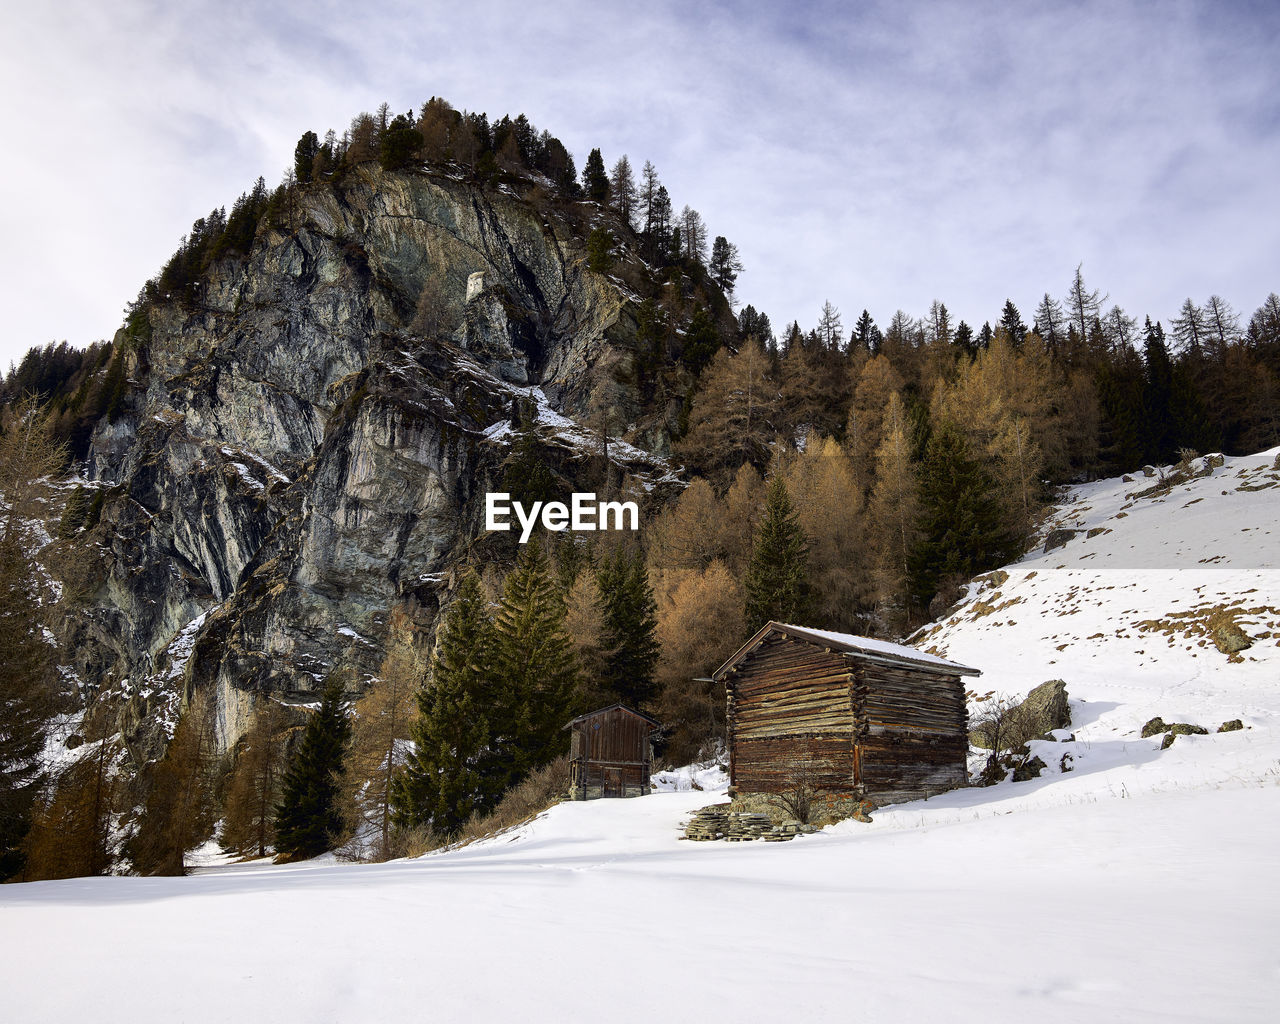 Wooden huts in wintery scene in swiss alps